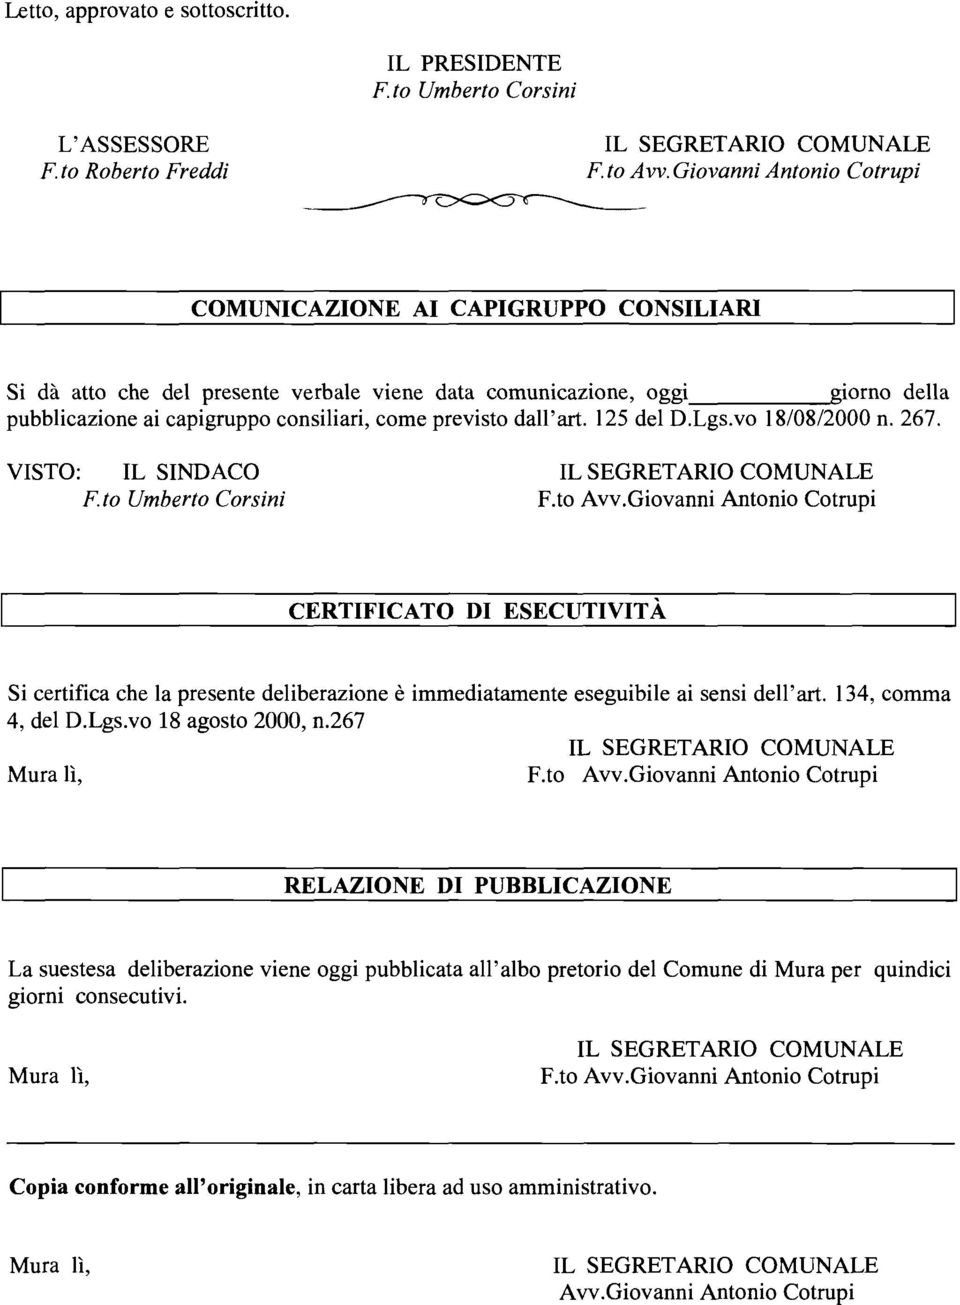 dall'art. 125 del D.Lgs.vo 18/08/2000 n. 267. VISTO: IL SINDACO F. to Umberto Corsini F.to Avv.